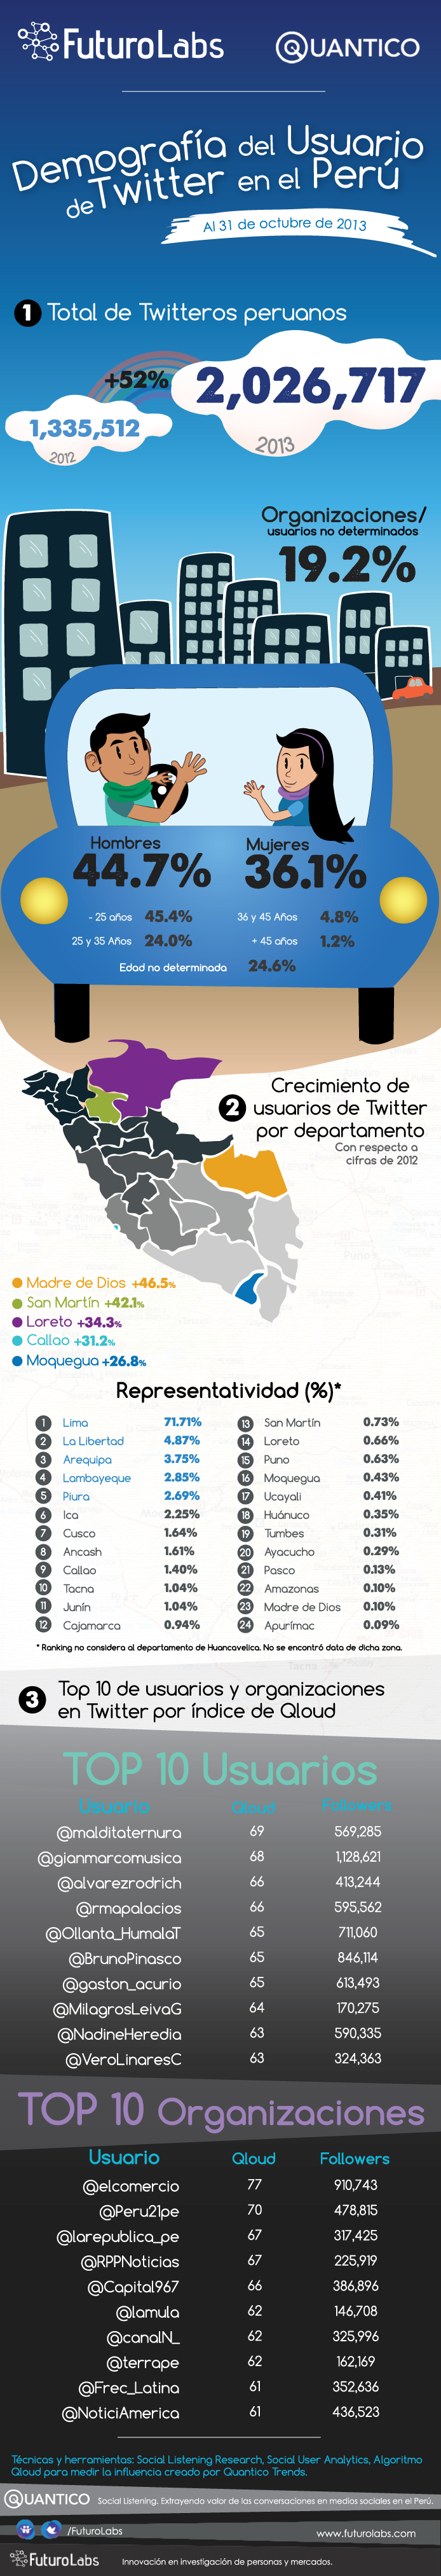 Demografía-de-los-usuarios-de-Twitter-en-el-Perú-2013-2